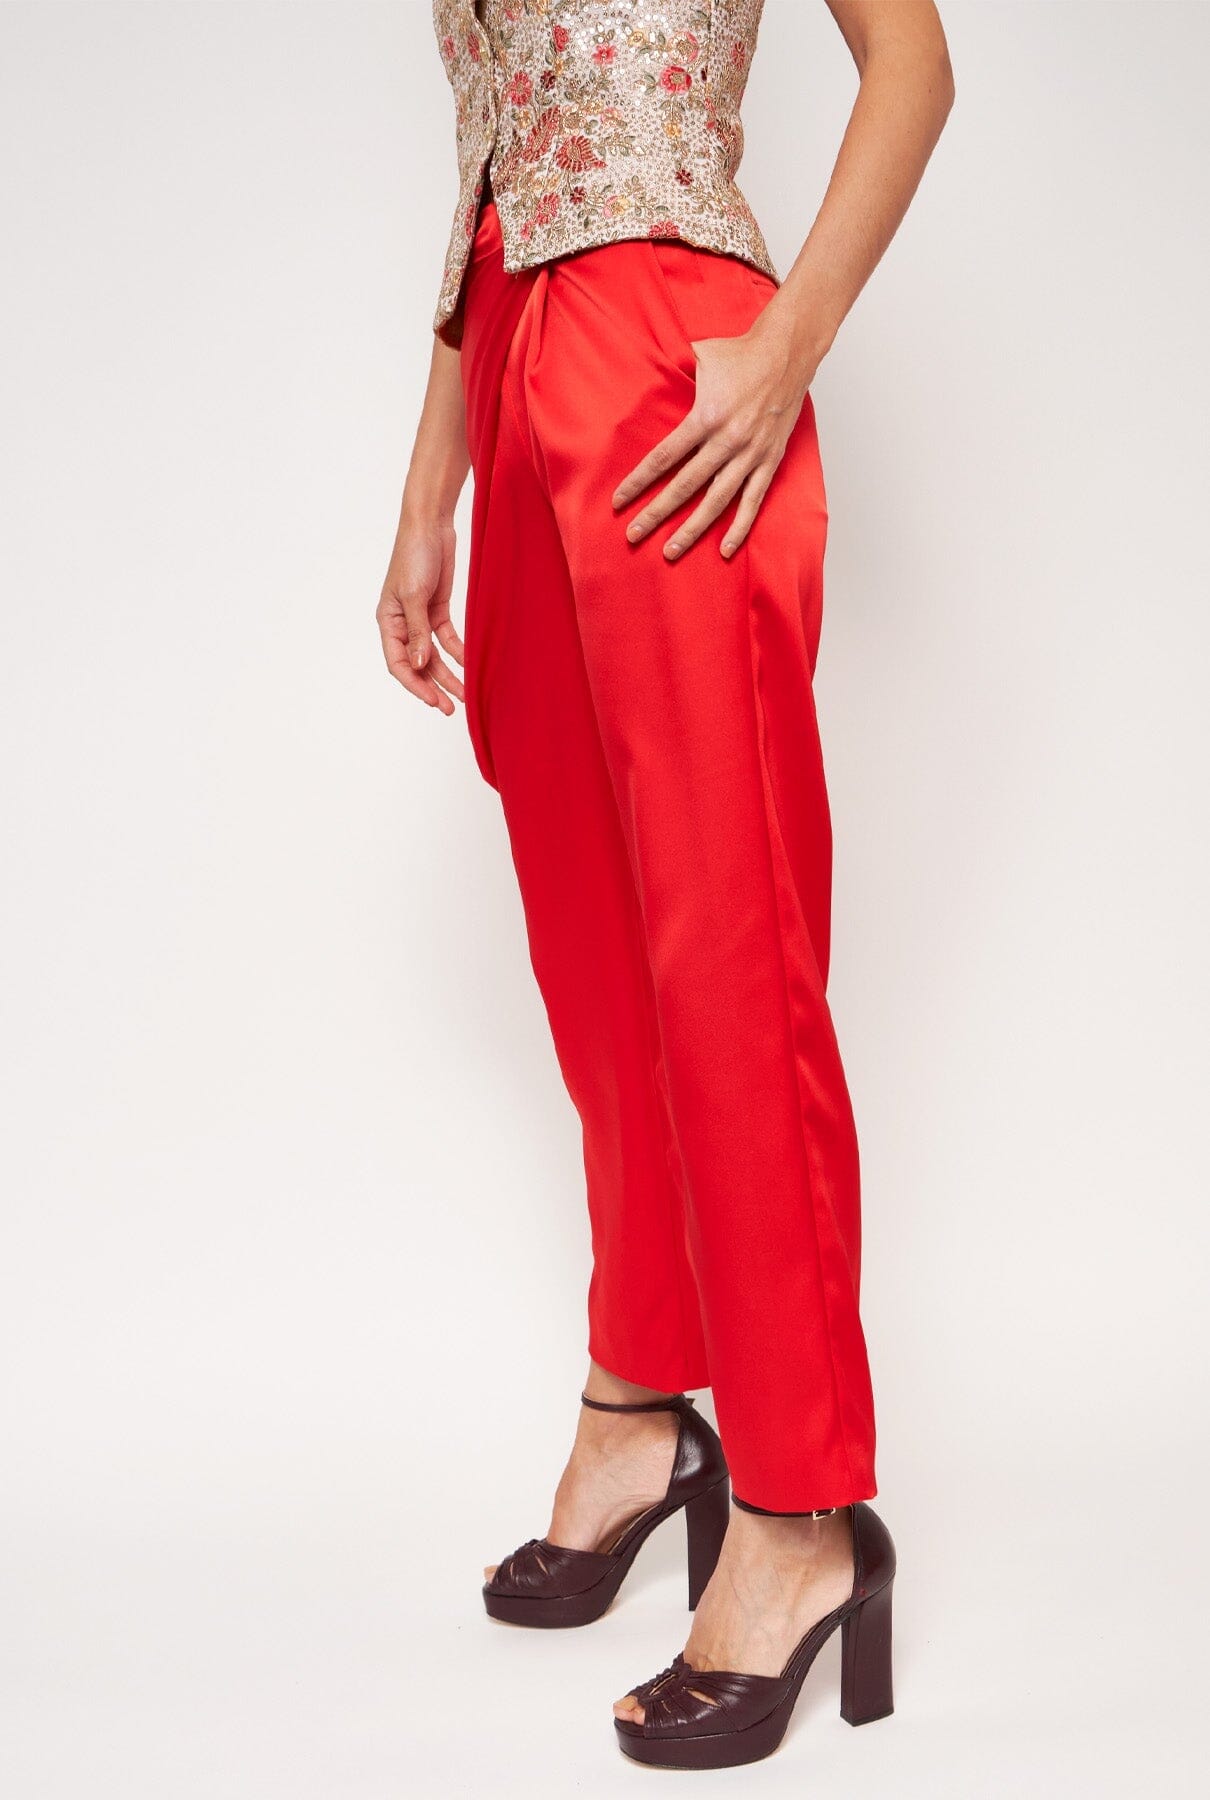 Mantalon for Es Fascinante: Red (PRE-SALE) Trousers Mantalon 